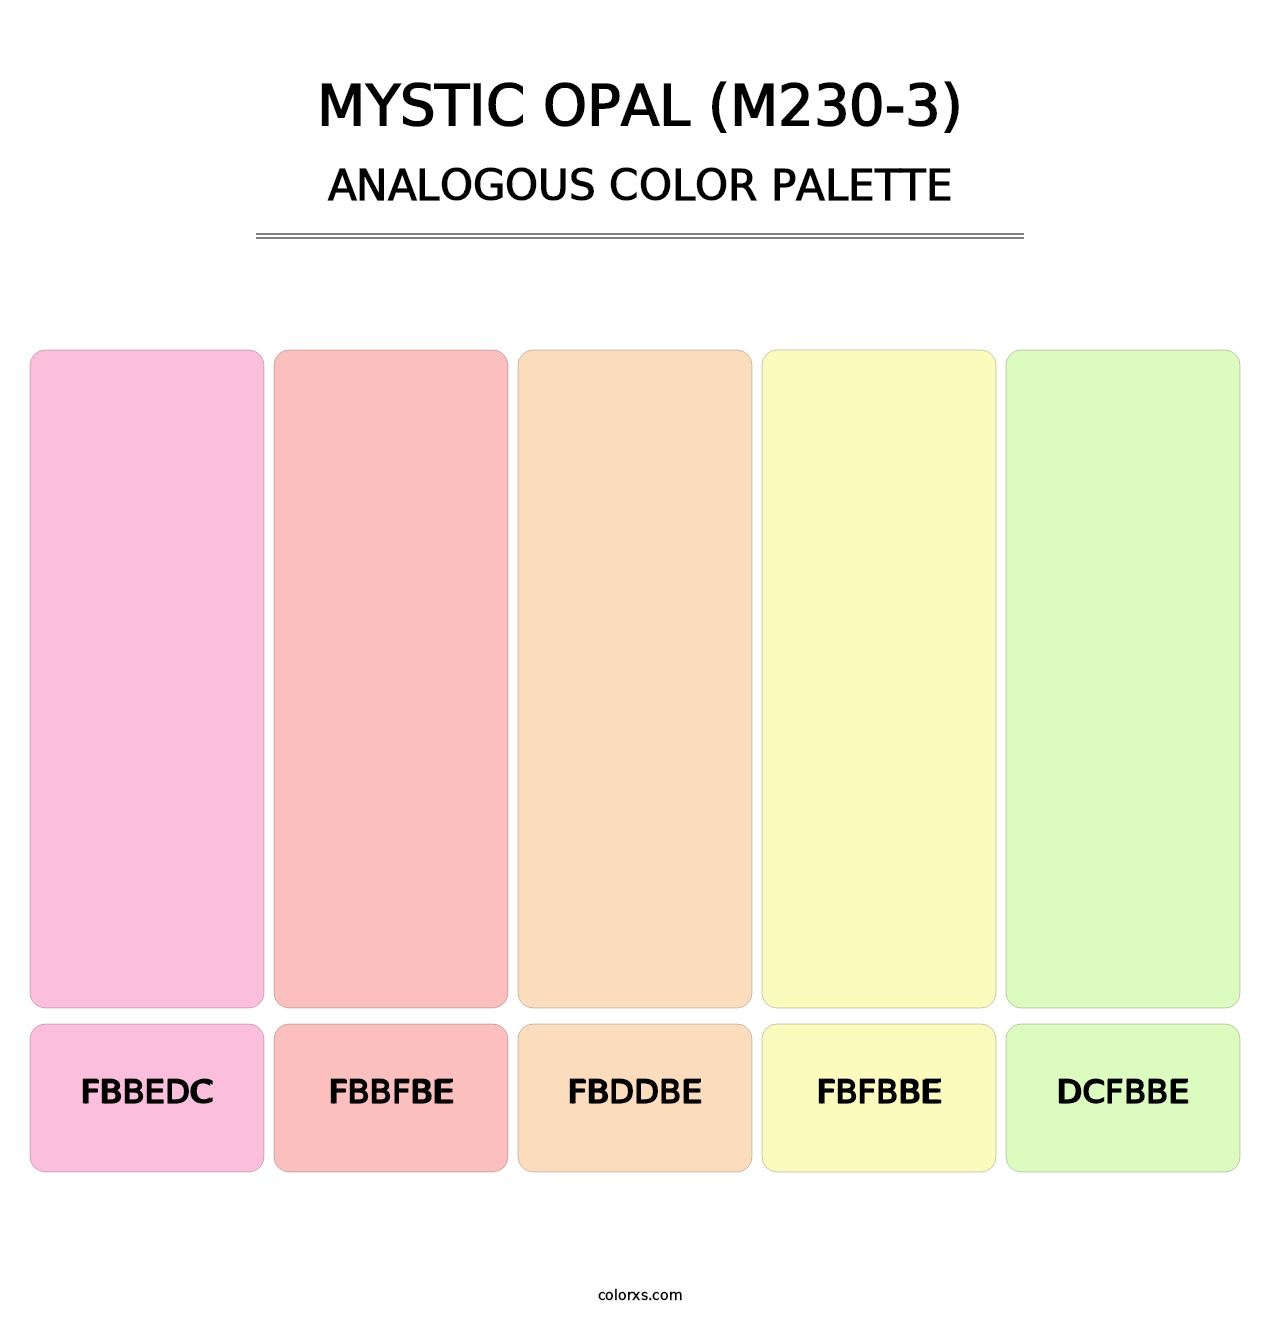 Mystic Opal (M230-3) - Analogous Color Palette